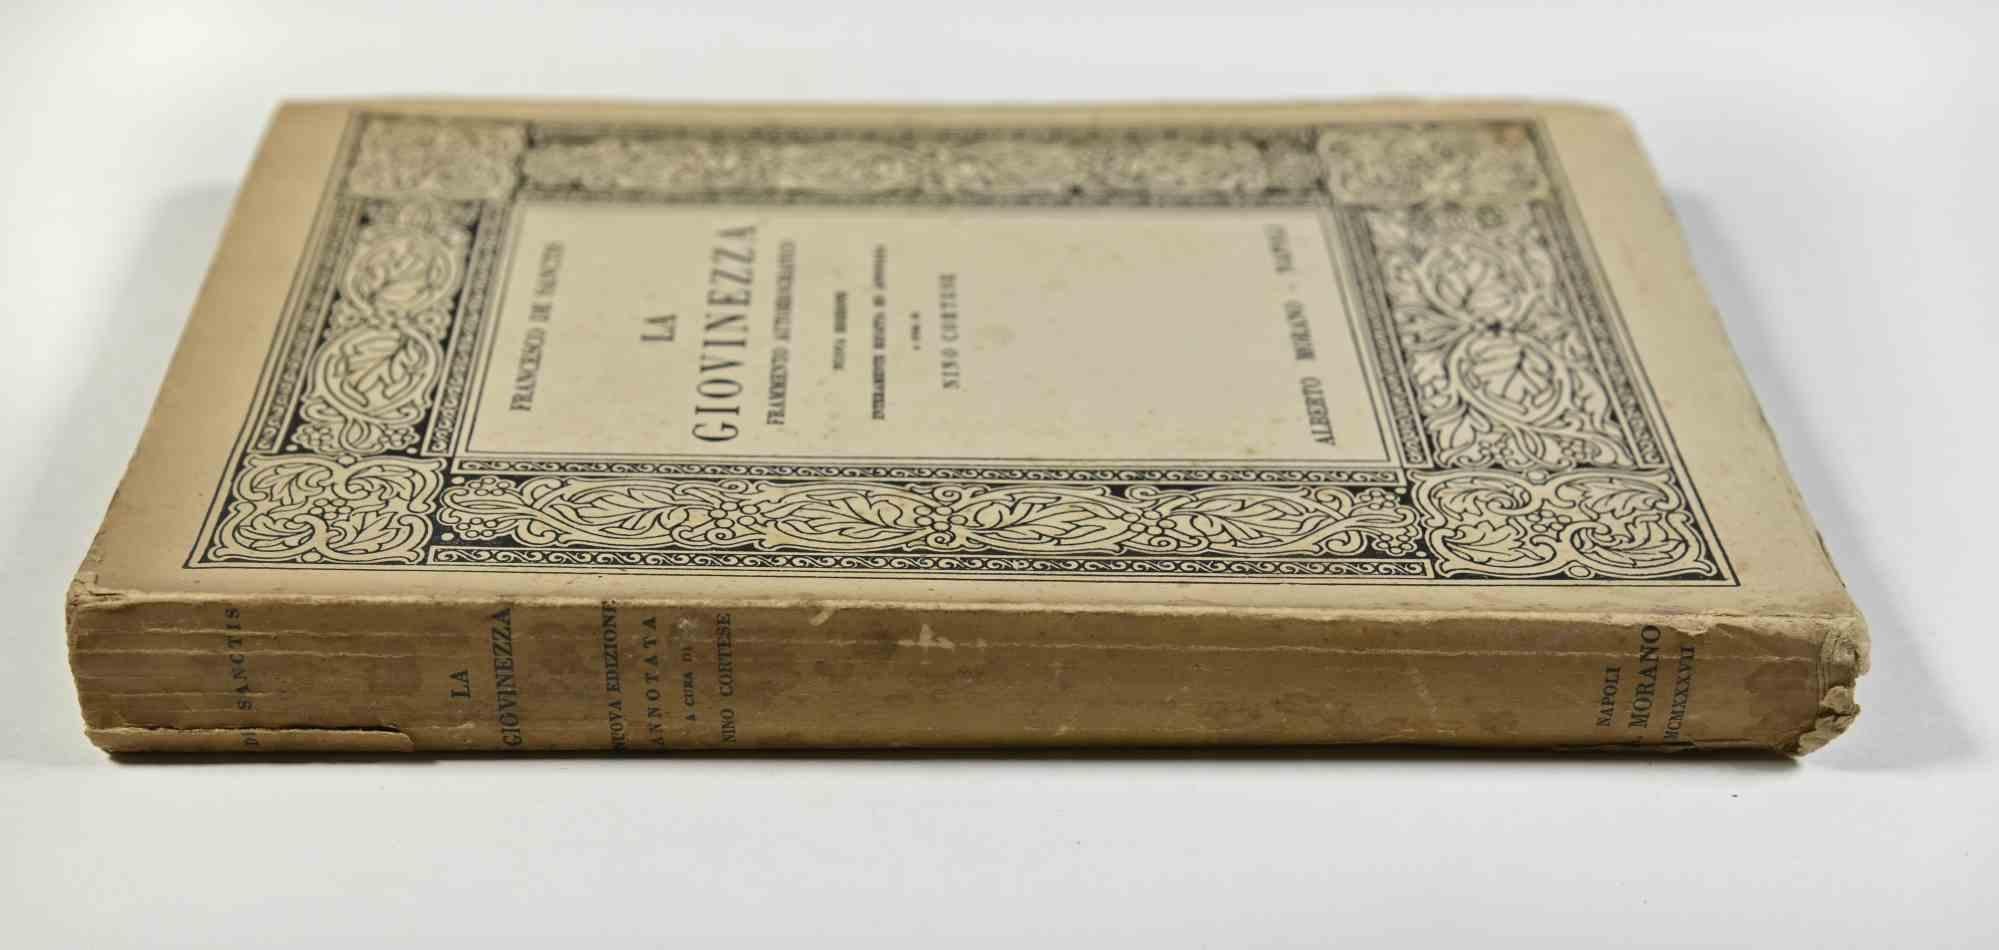 Youth - Rare Book by Francesco De Sanctis - 1936 For Sale 1